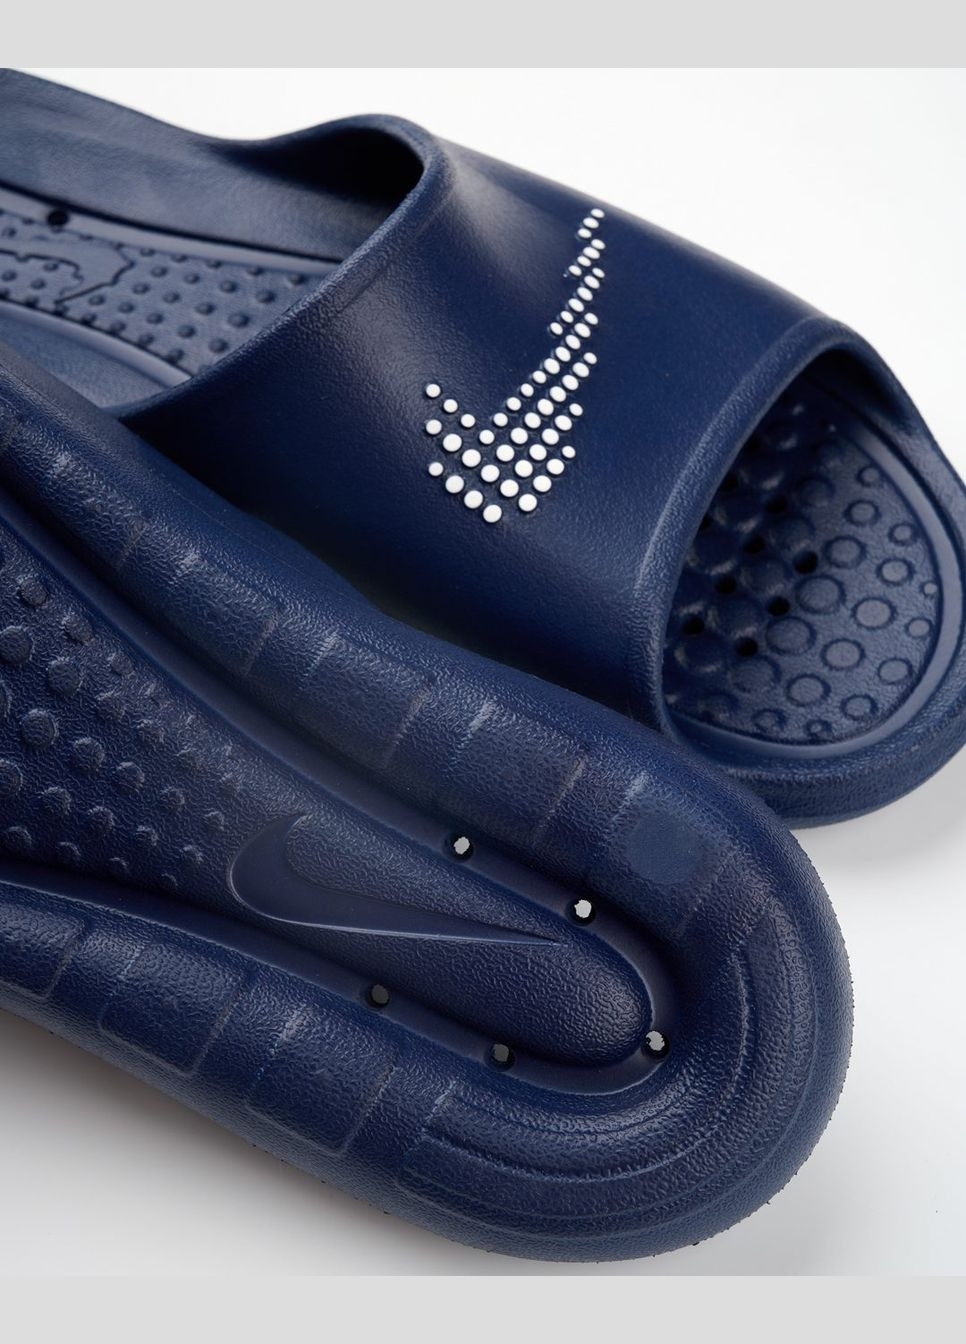 Синие мужские тапочки victori one shower slide cz5478-400 синие Nike